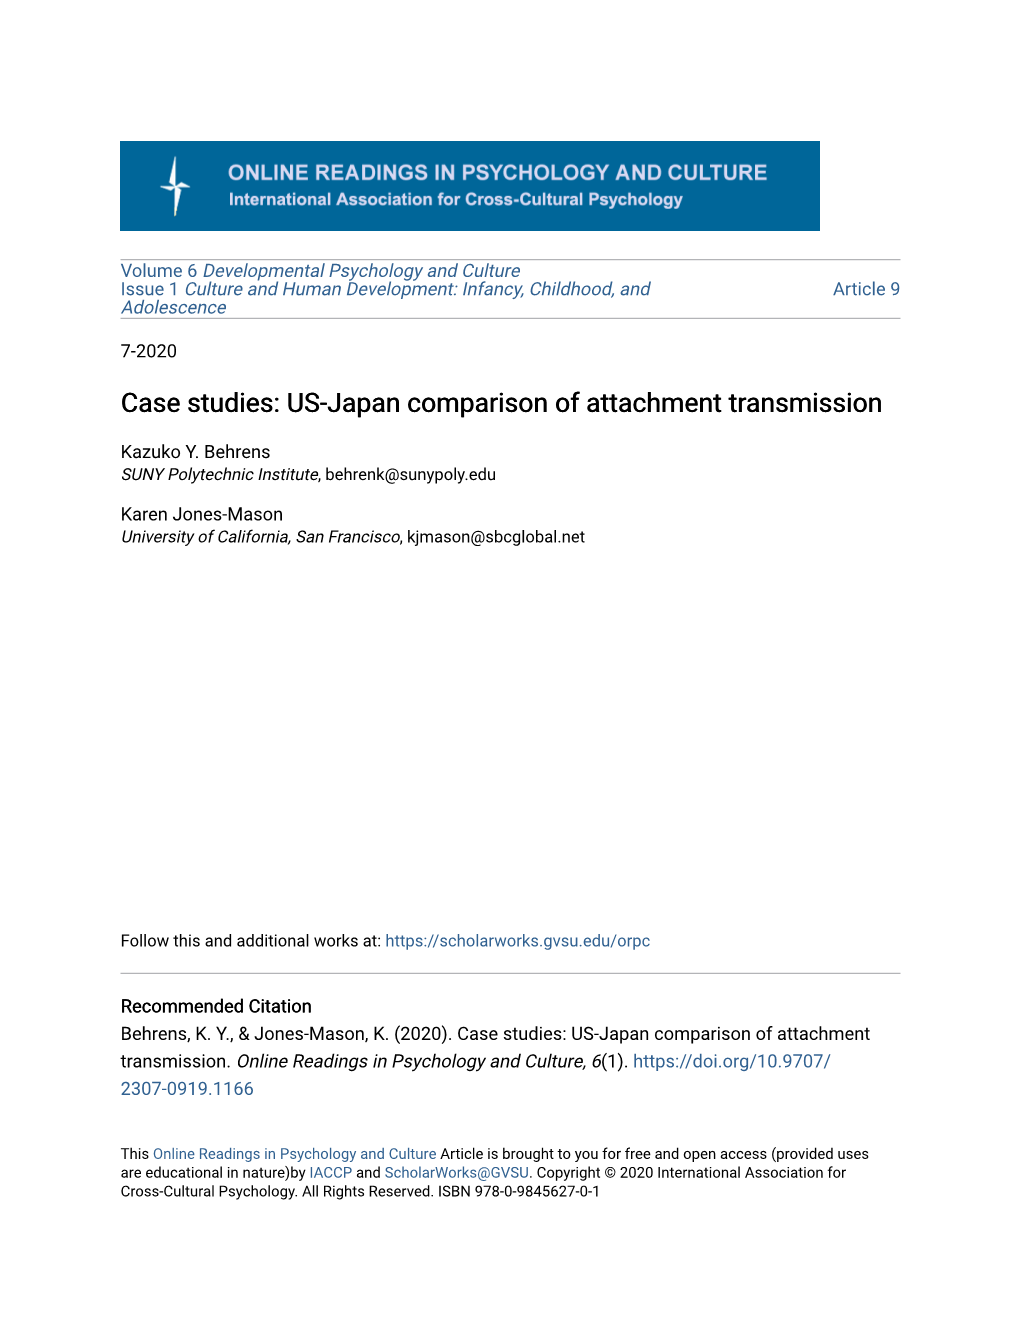 Case Studies: US-Japan Comparison of Attachment Transmission